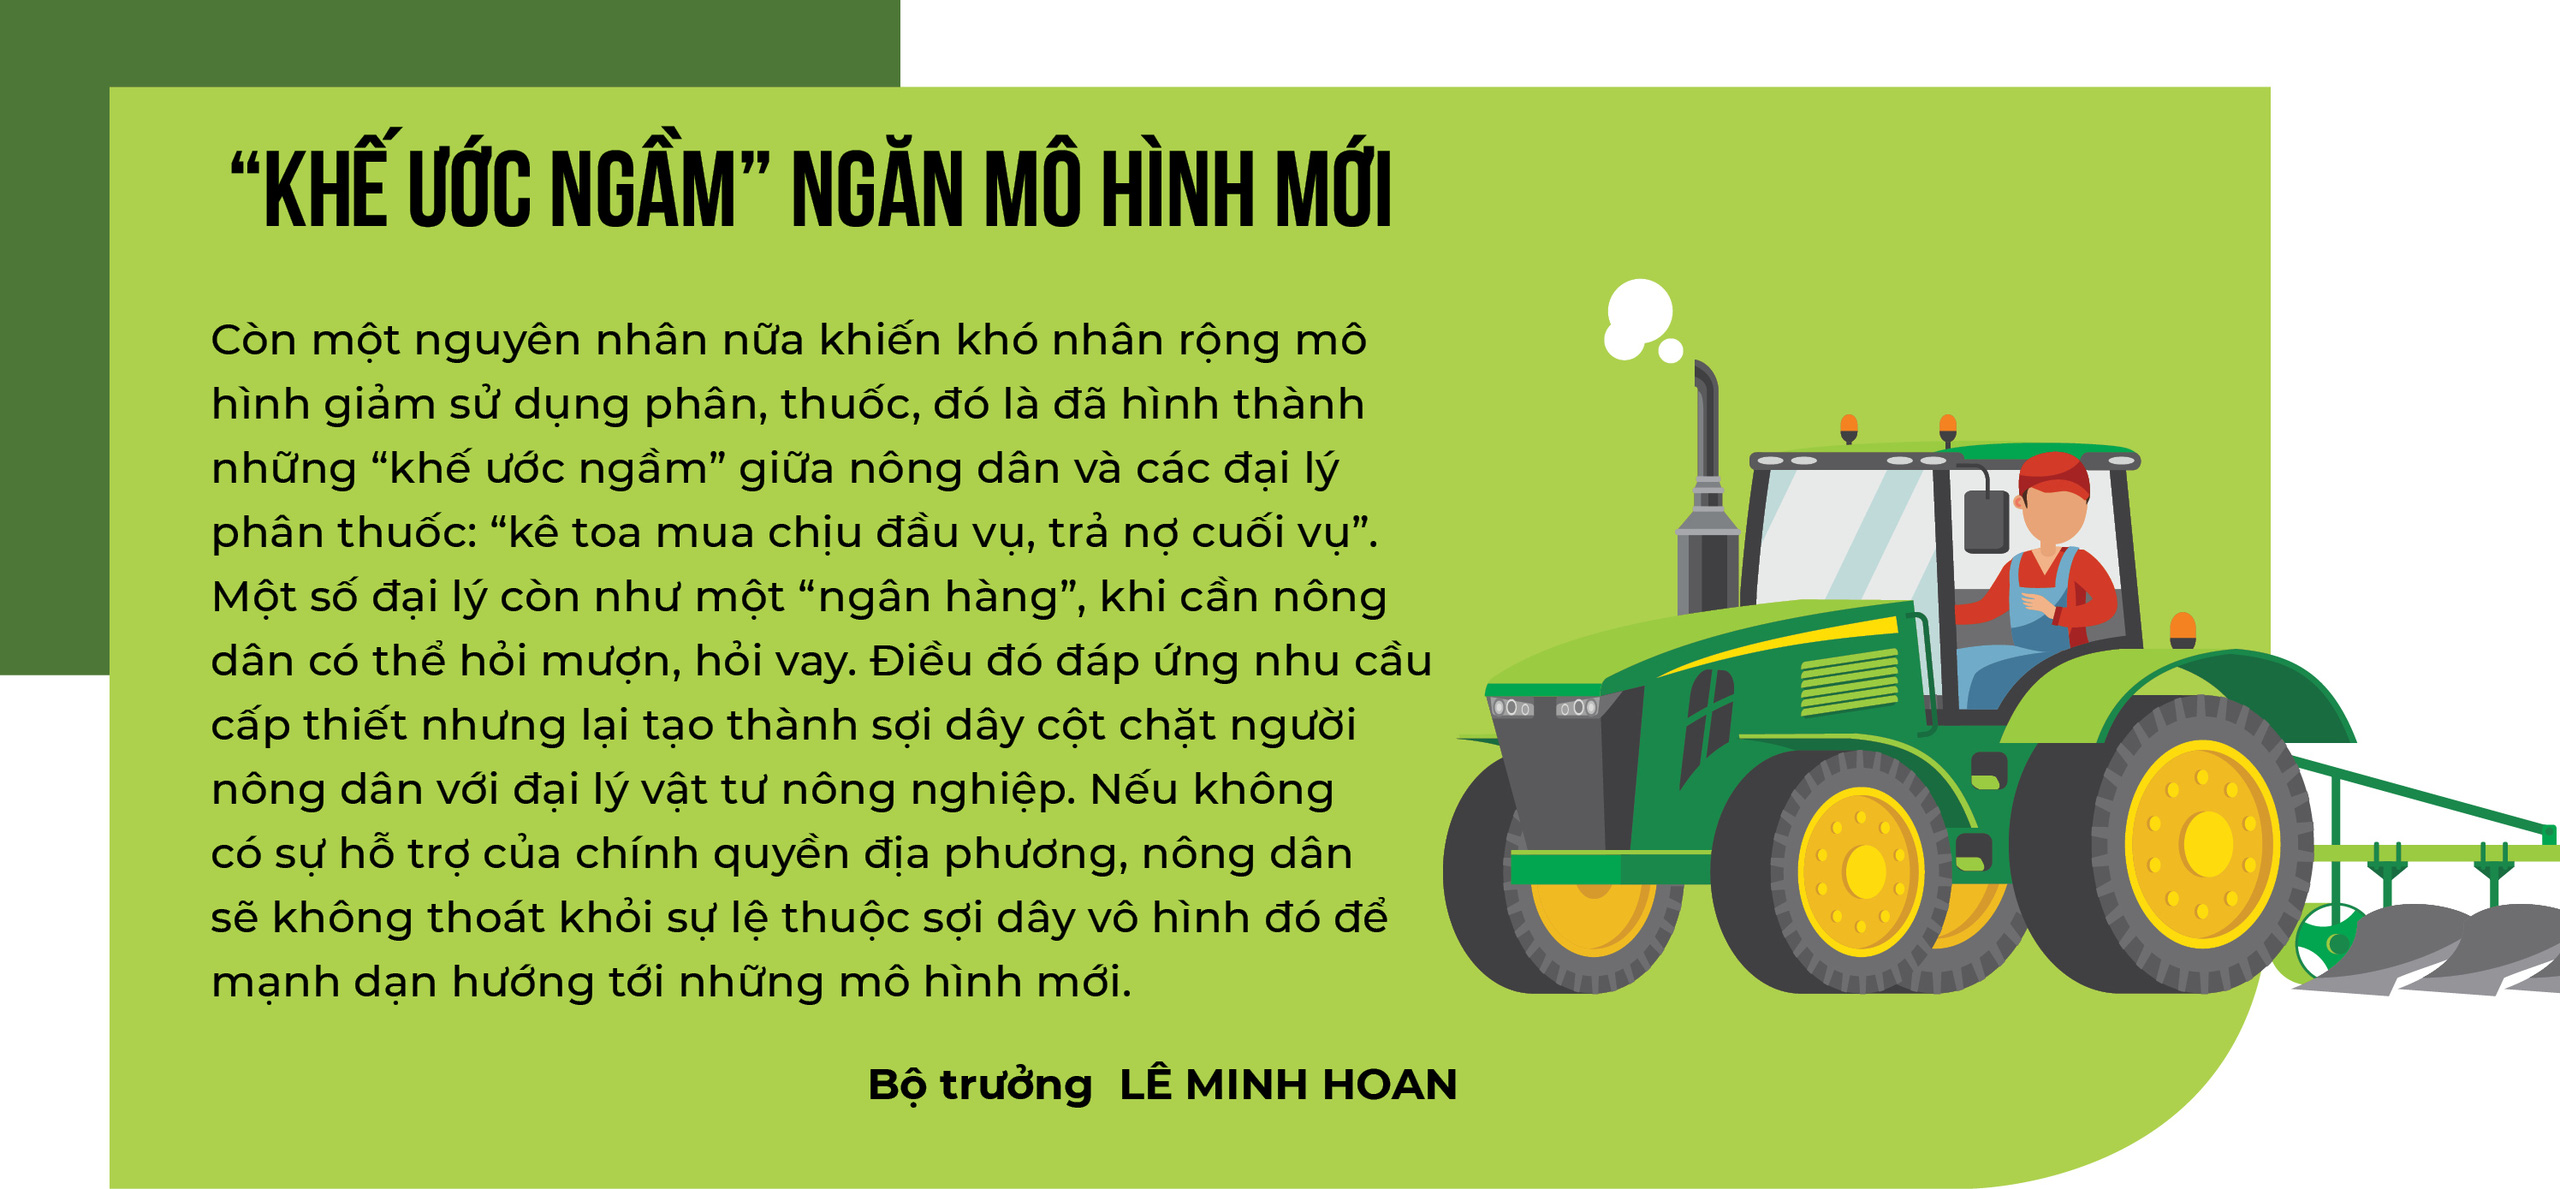 Bộ trưởng Lê Minh Hoan: Bước qua nền nông nghiệp đánh đổi - Ảnh 6.